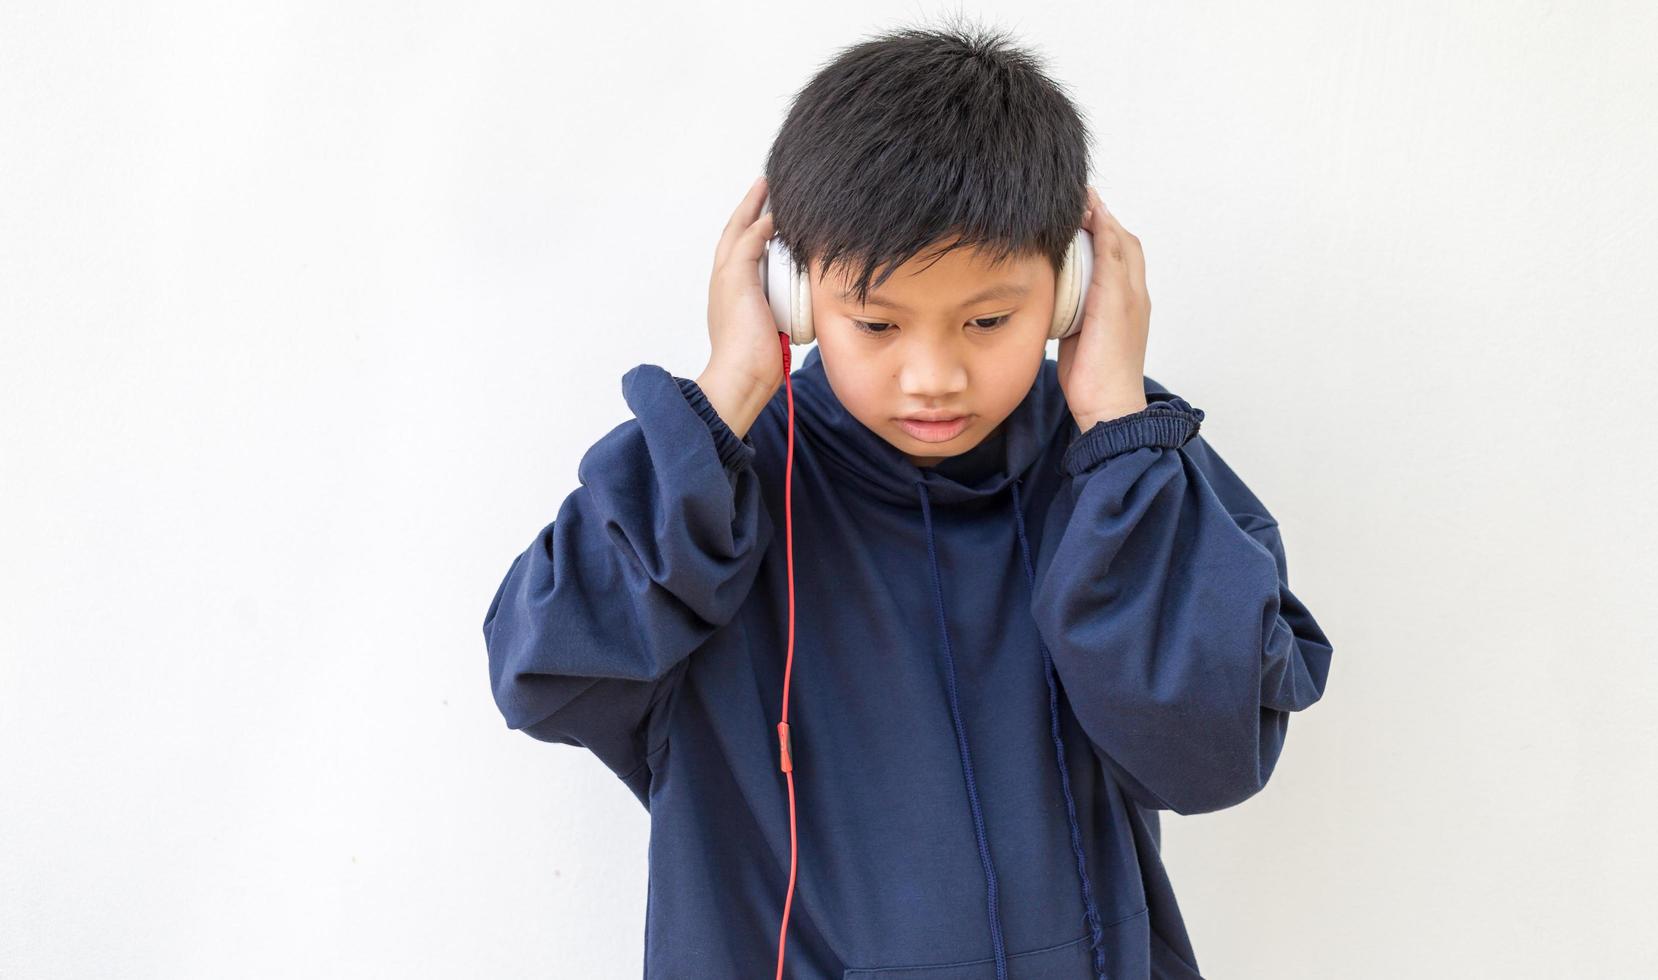 söt asiatisk pojke i en hoodie poserar stående leende avslappnad och glad lyssnar på musik med hörlurar. känslomässigt porträtt av en ung pojke som njuter av musik foto